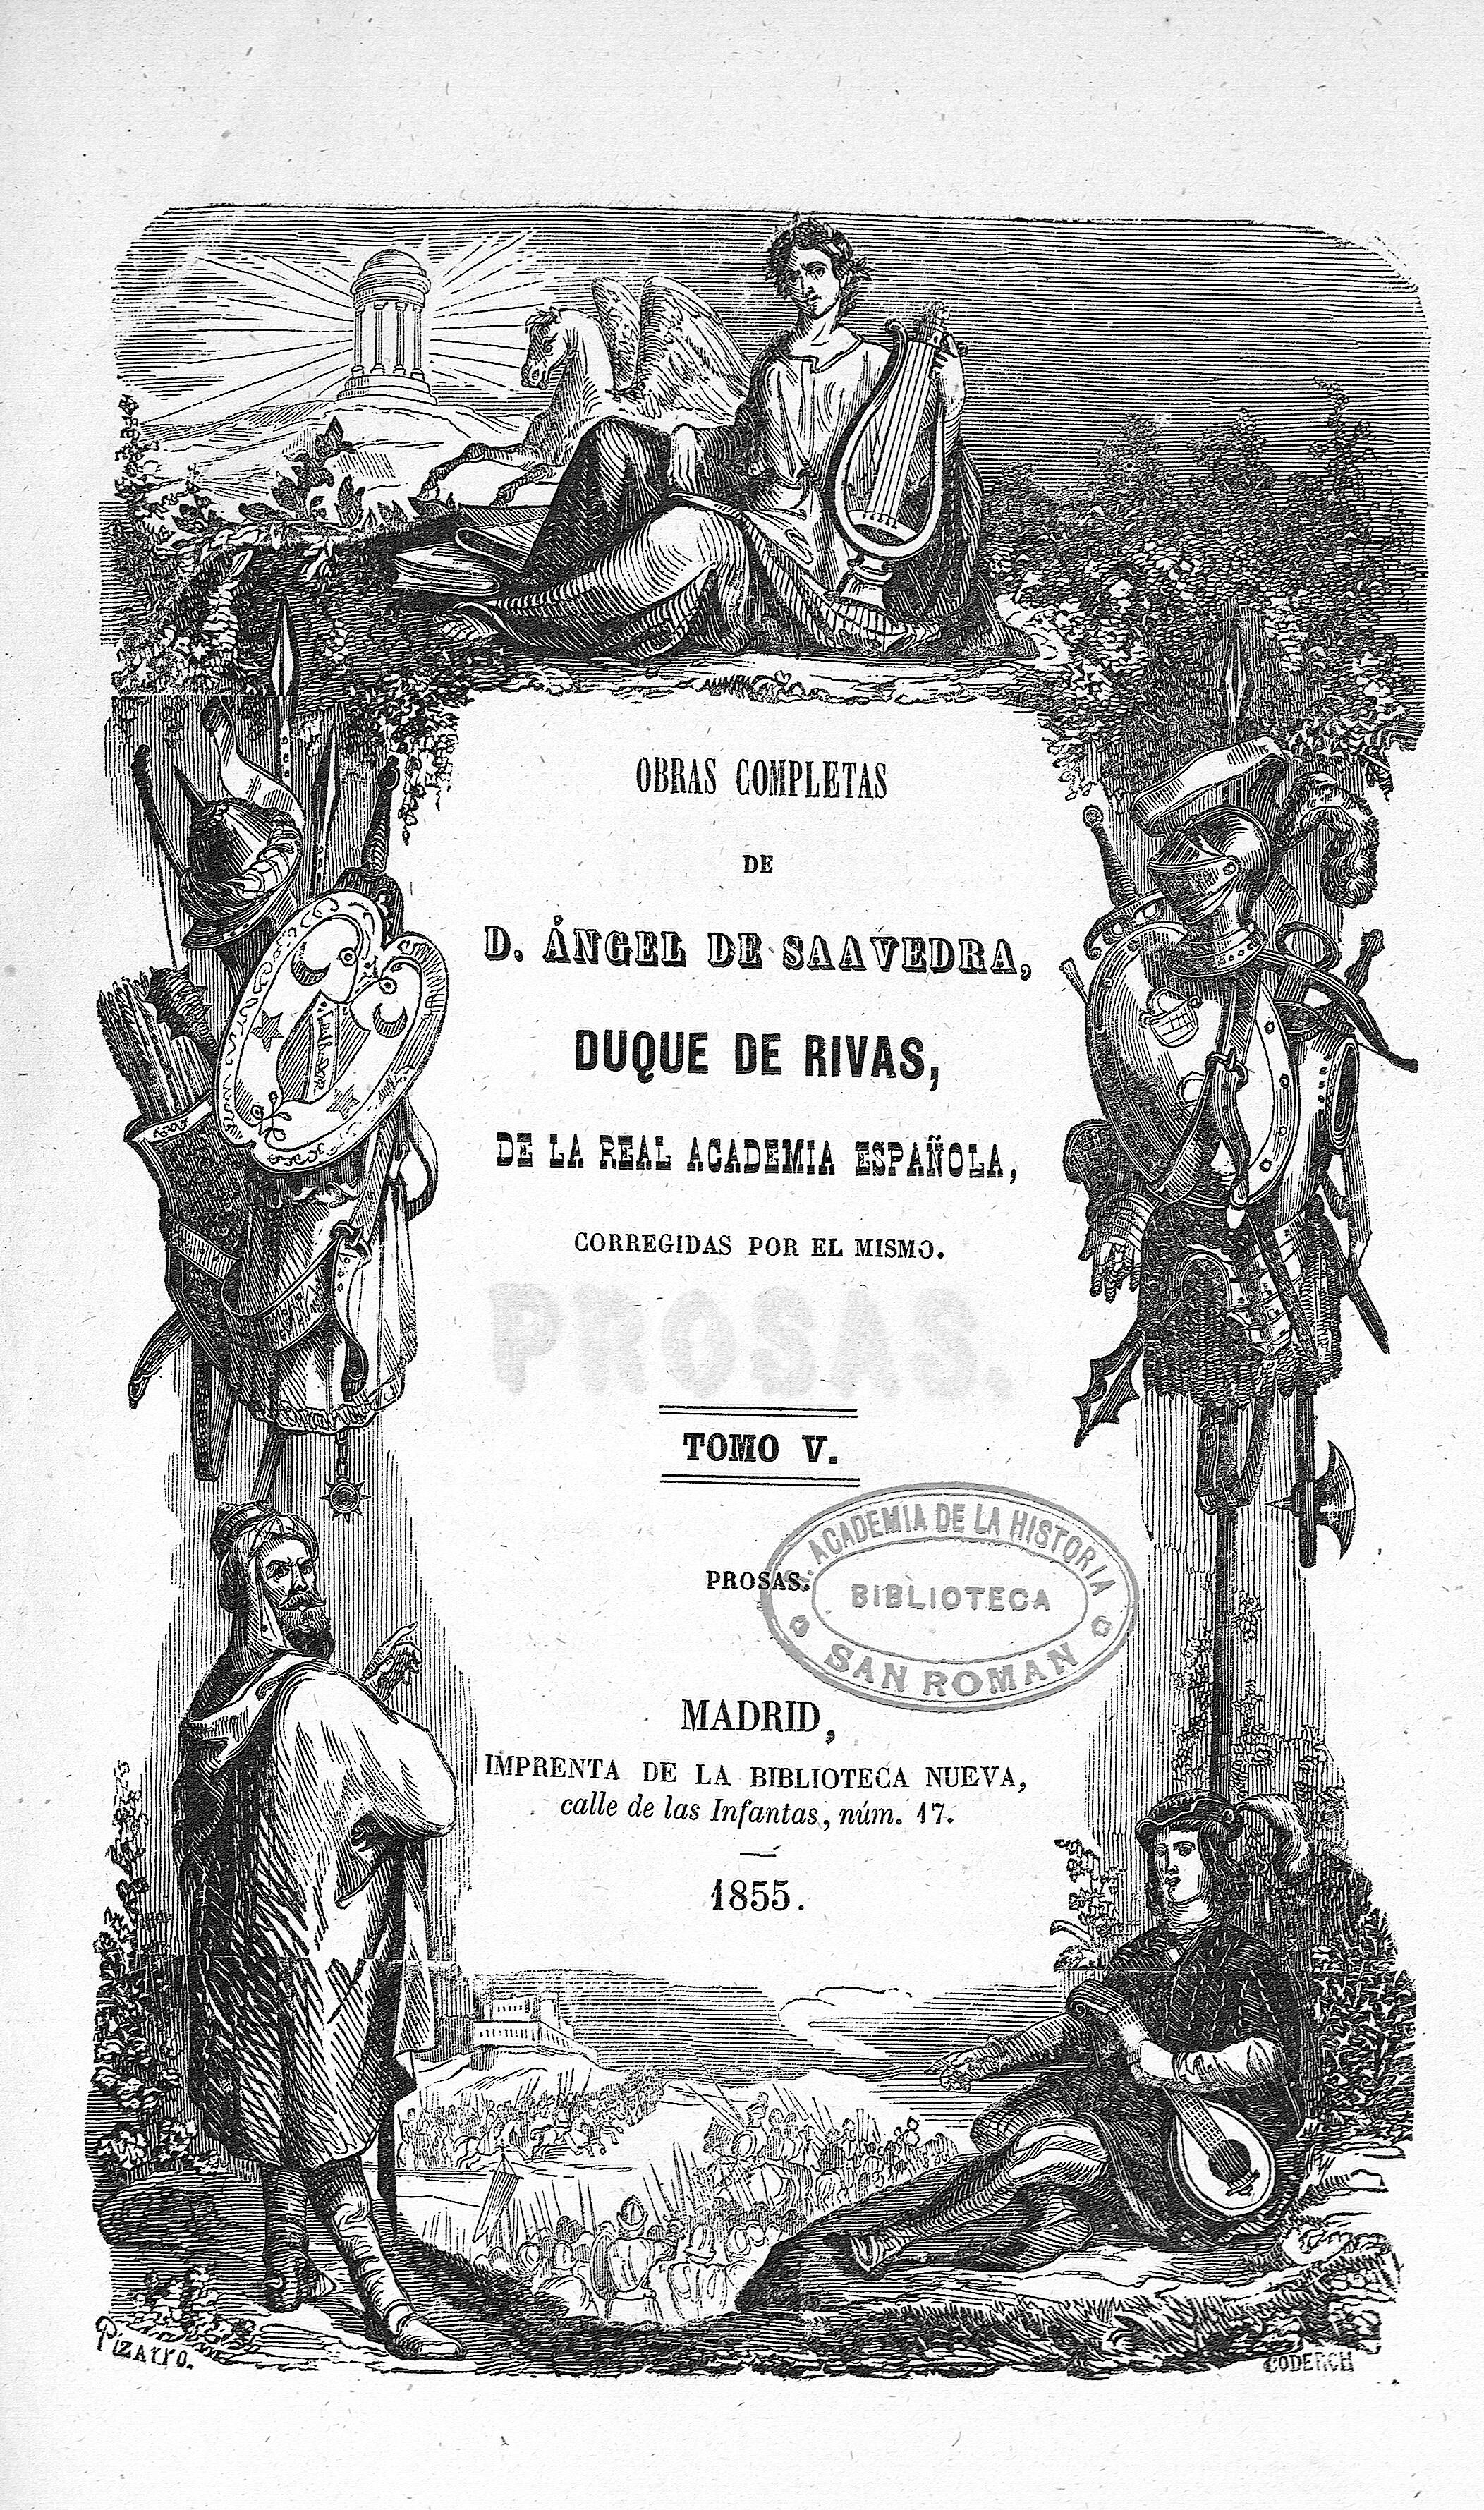 Obras completas de D. Ángel de Saavedra, Duque de Rivas,... Tomo V.